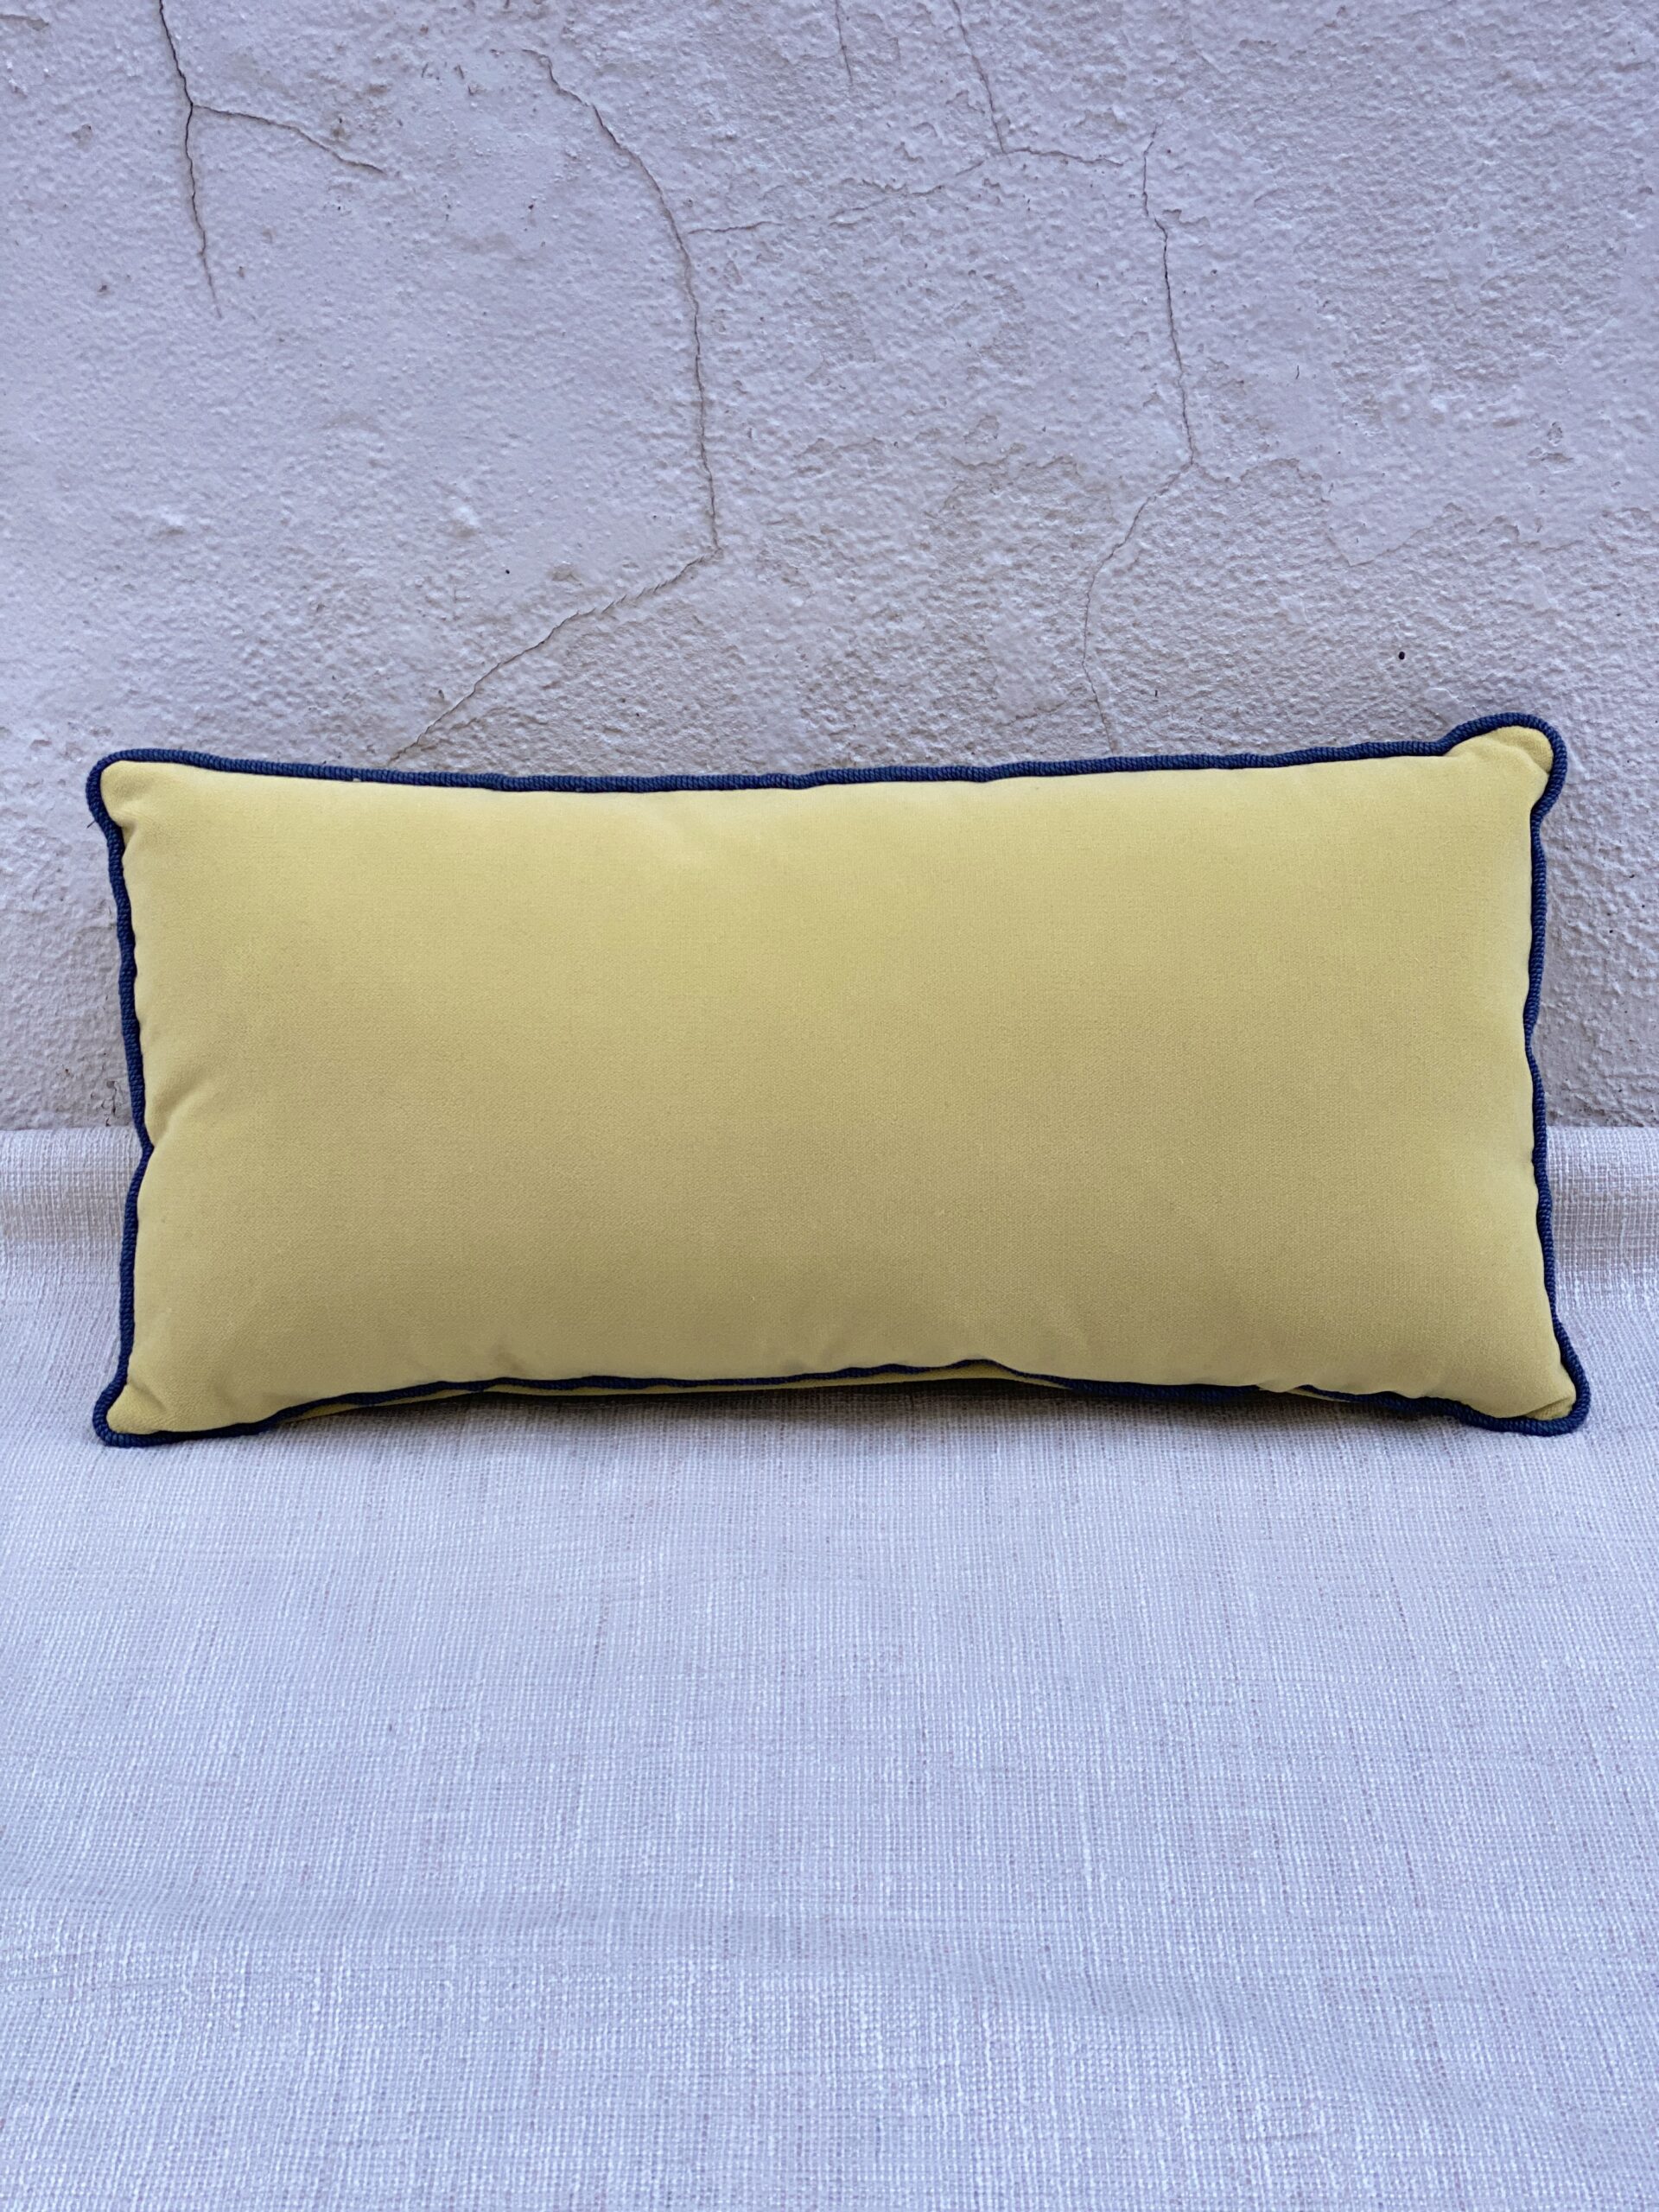 JF Fabrics Salute Pillows